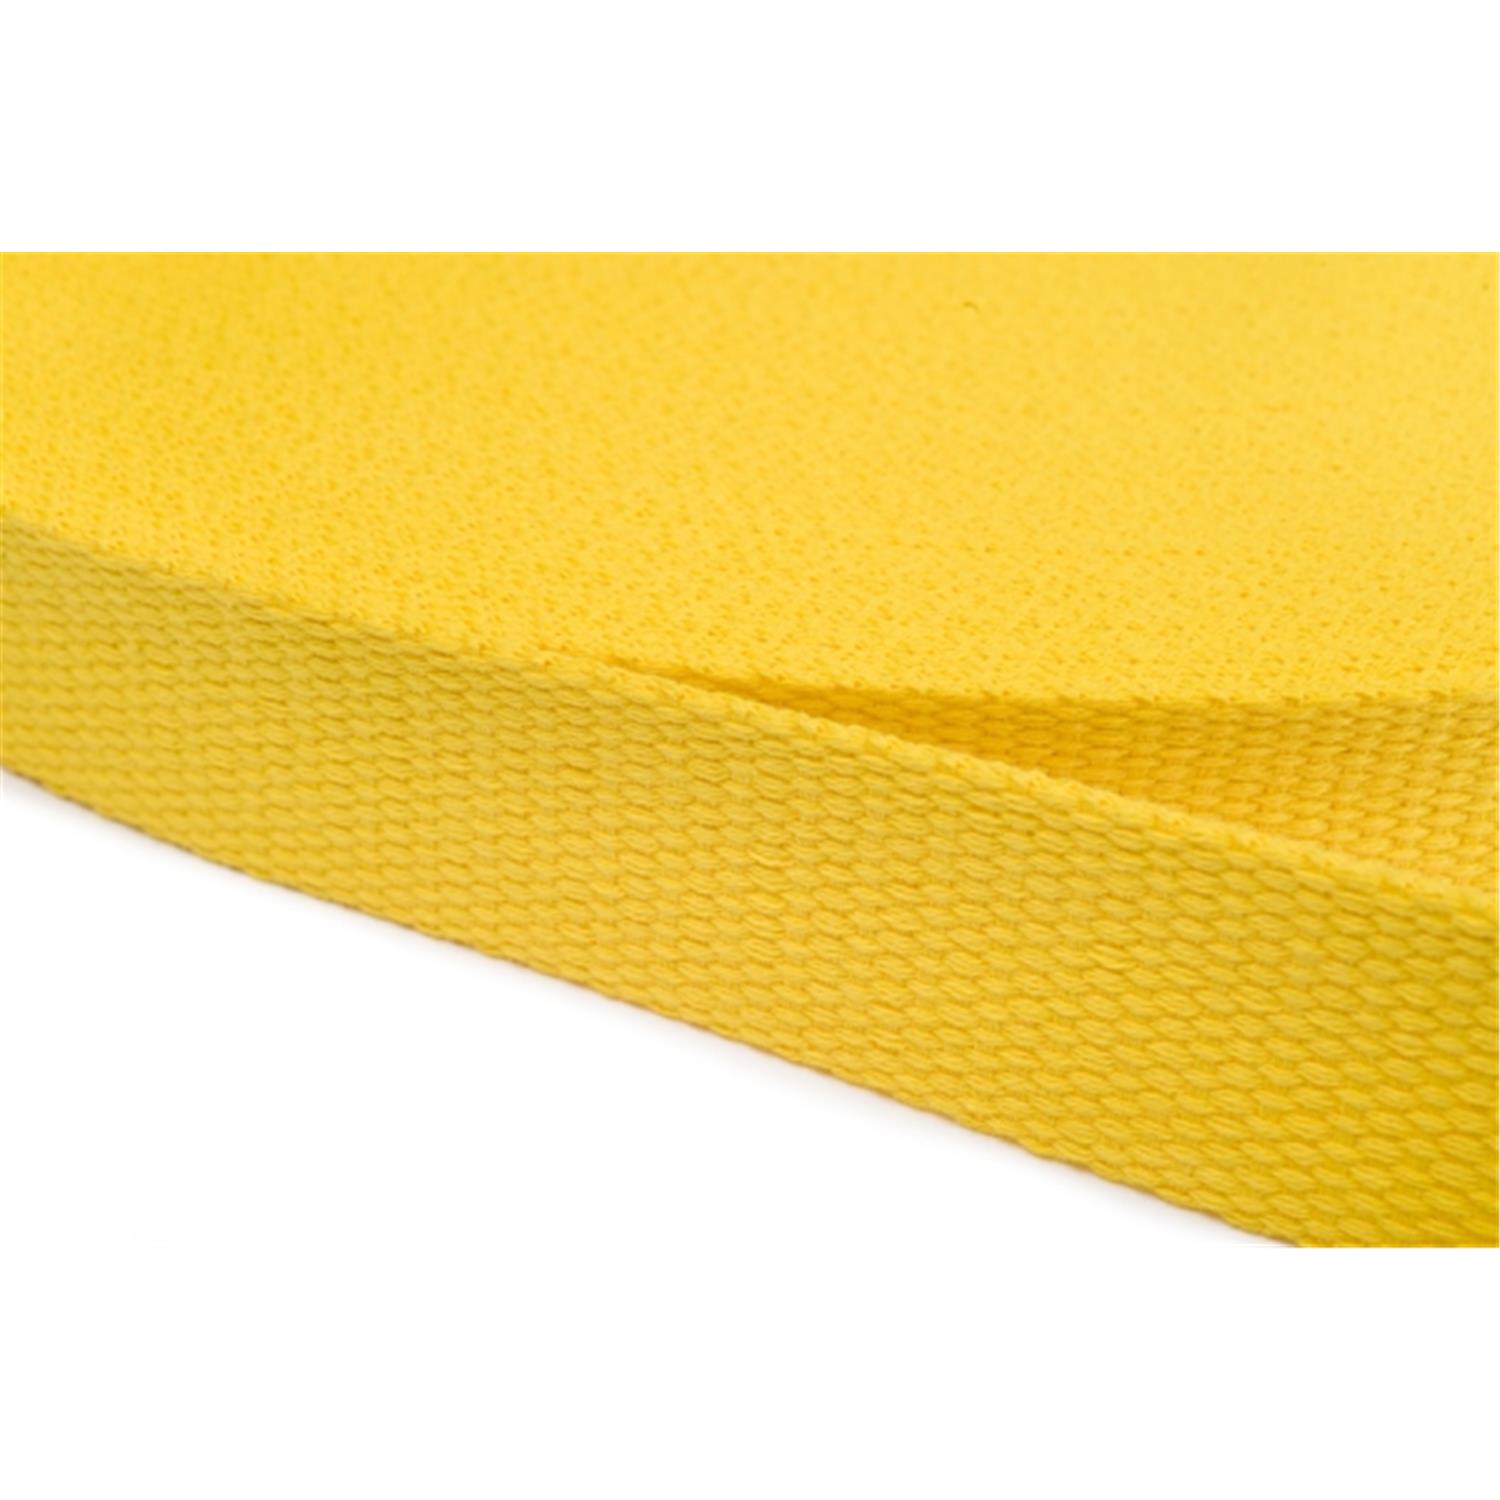 Gurtband aus Baumwolle 10mm in 20 Farben 05 - gelb 6 Meter